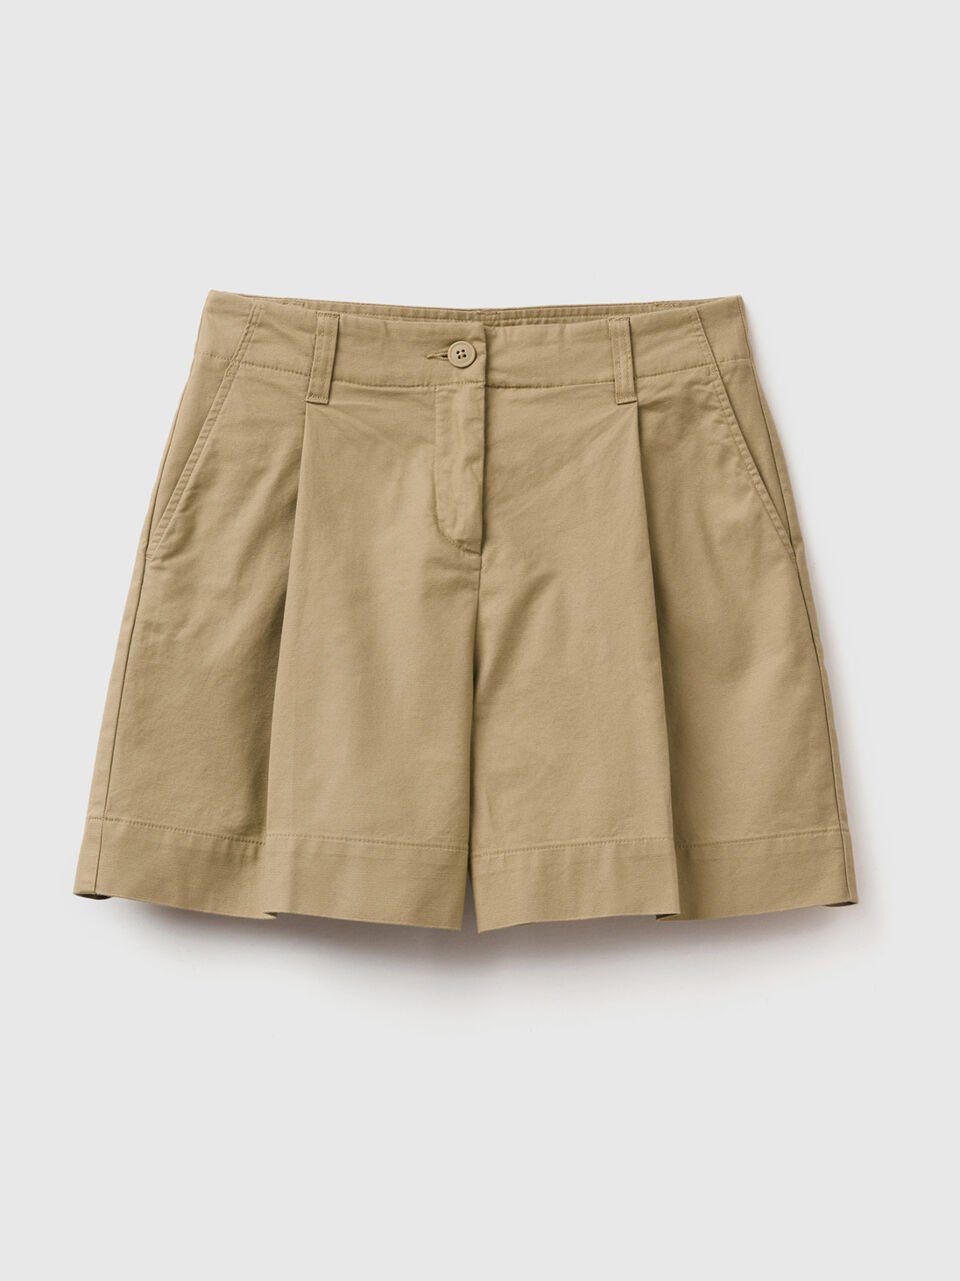 (image for) in offerta Shorts in cotone elasticizzato Economico